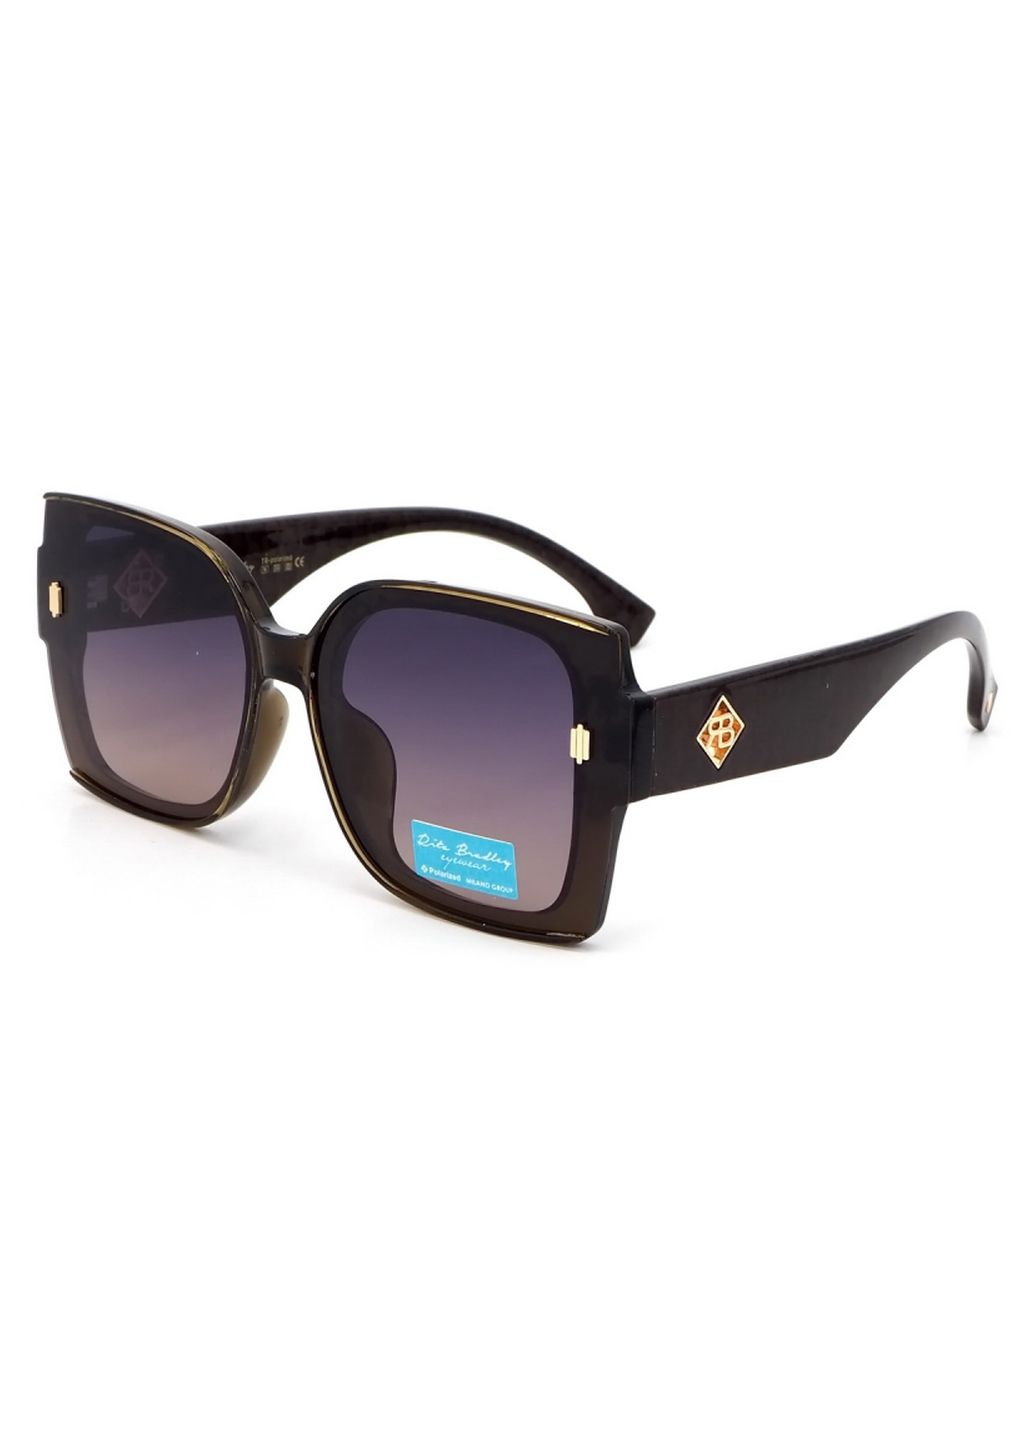 Купить Женские солнцезащитные очки Rita Bradley с поляризацией RB726 112054 в интернет-магазине